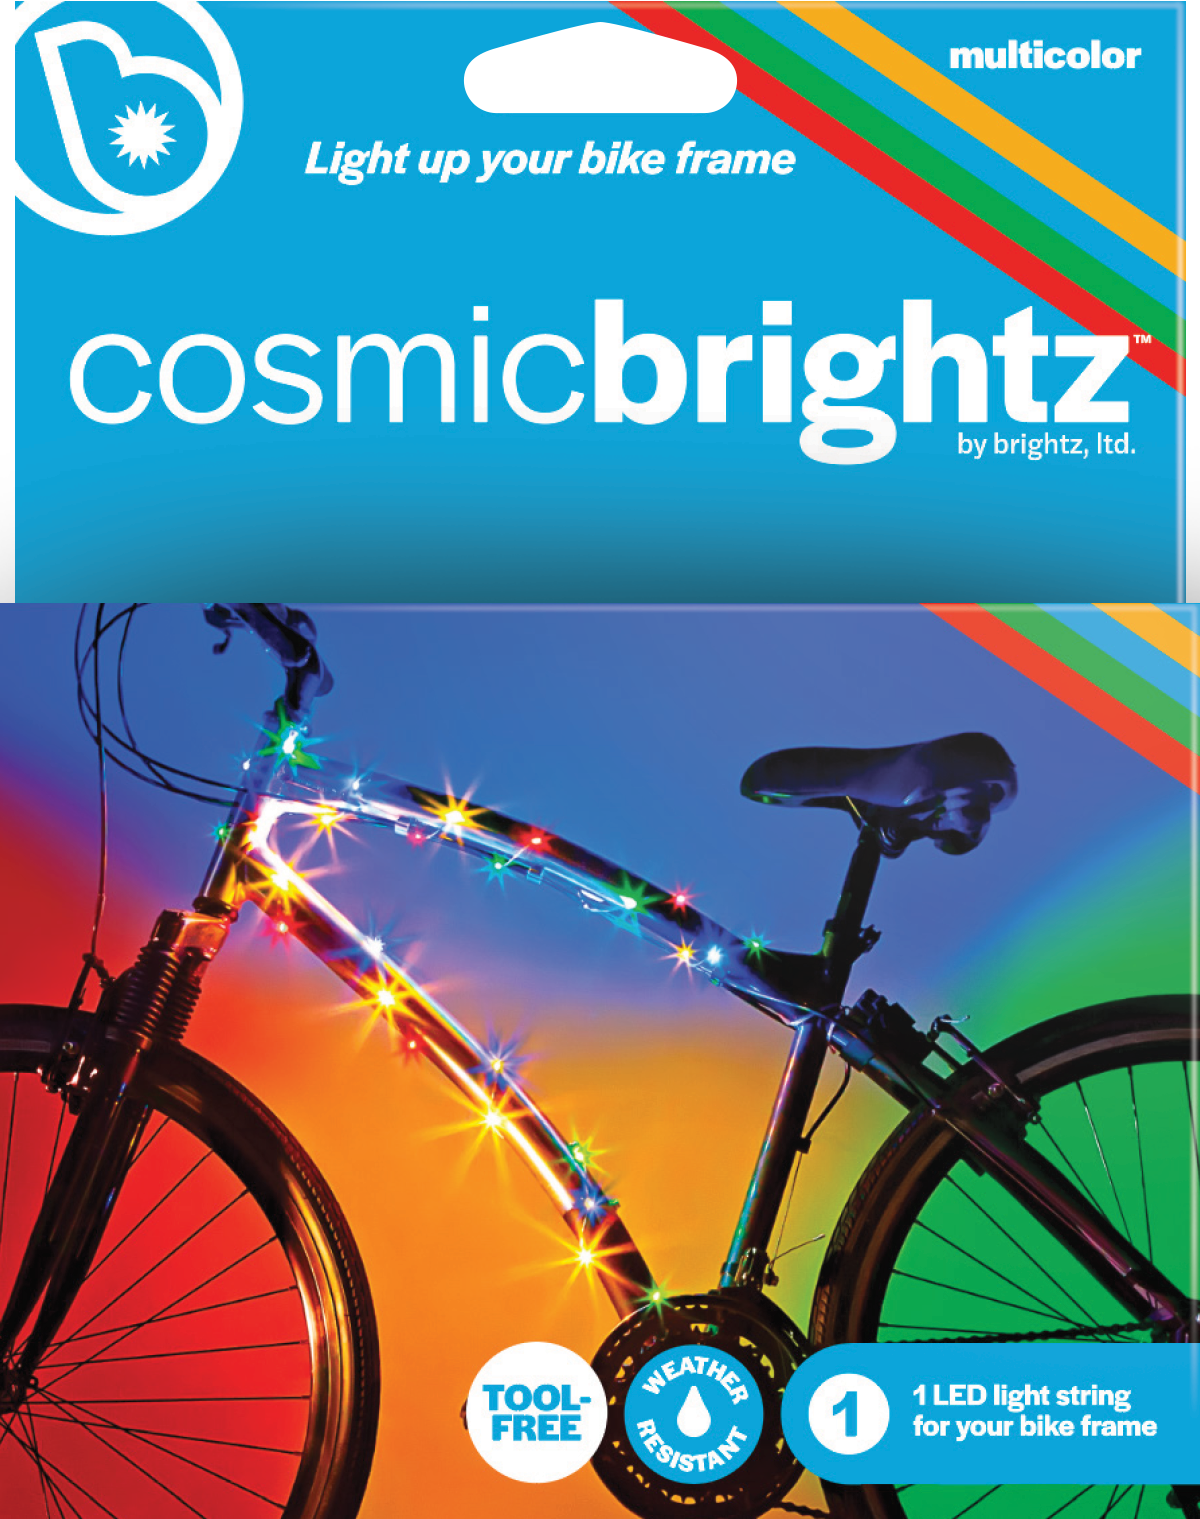 Cosmic Brightz